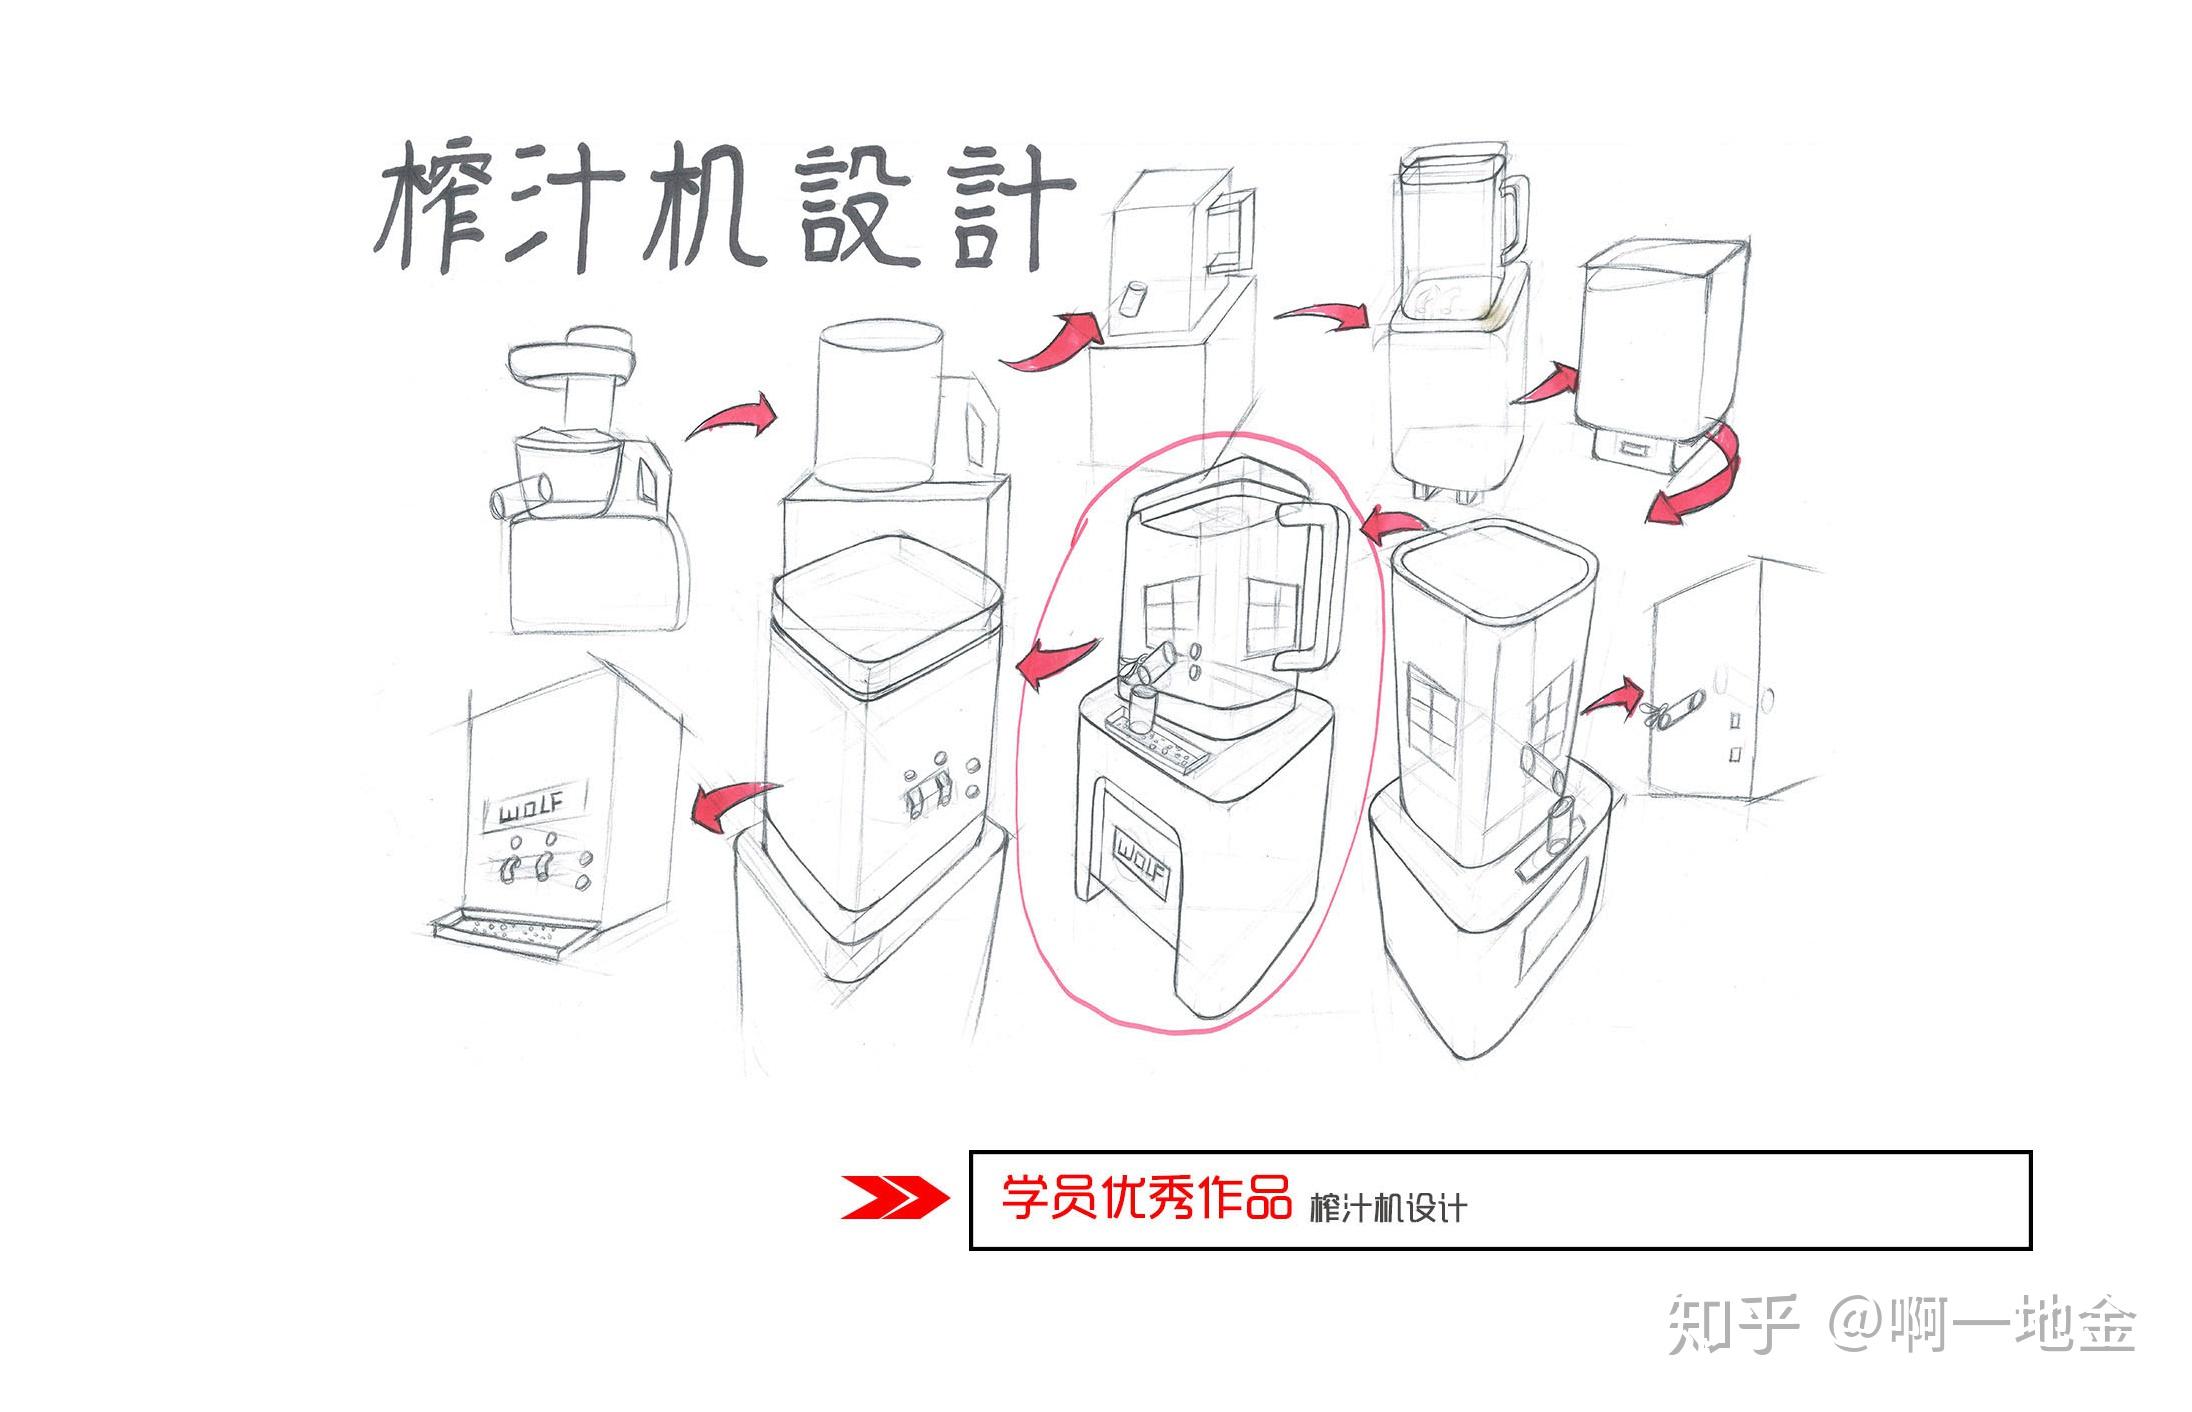 今日分享一榨汁机设计大禹手绘工业设计优秀作品欣赏